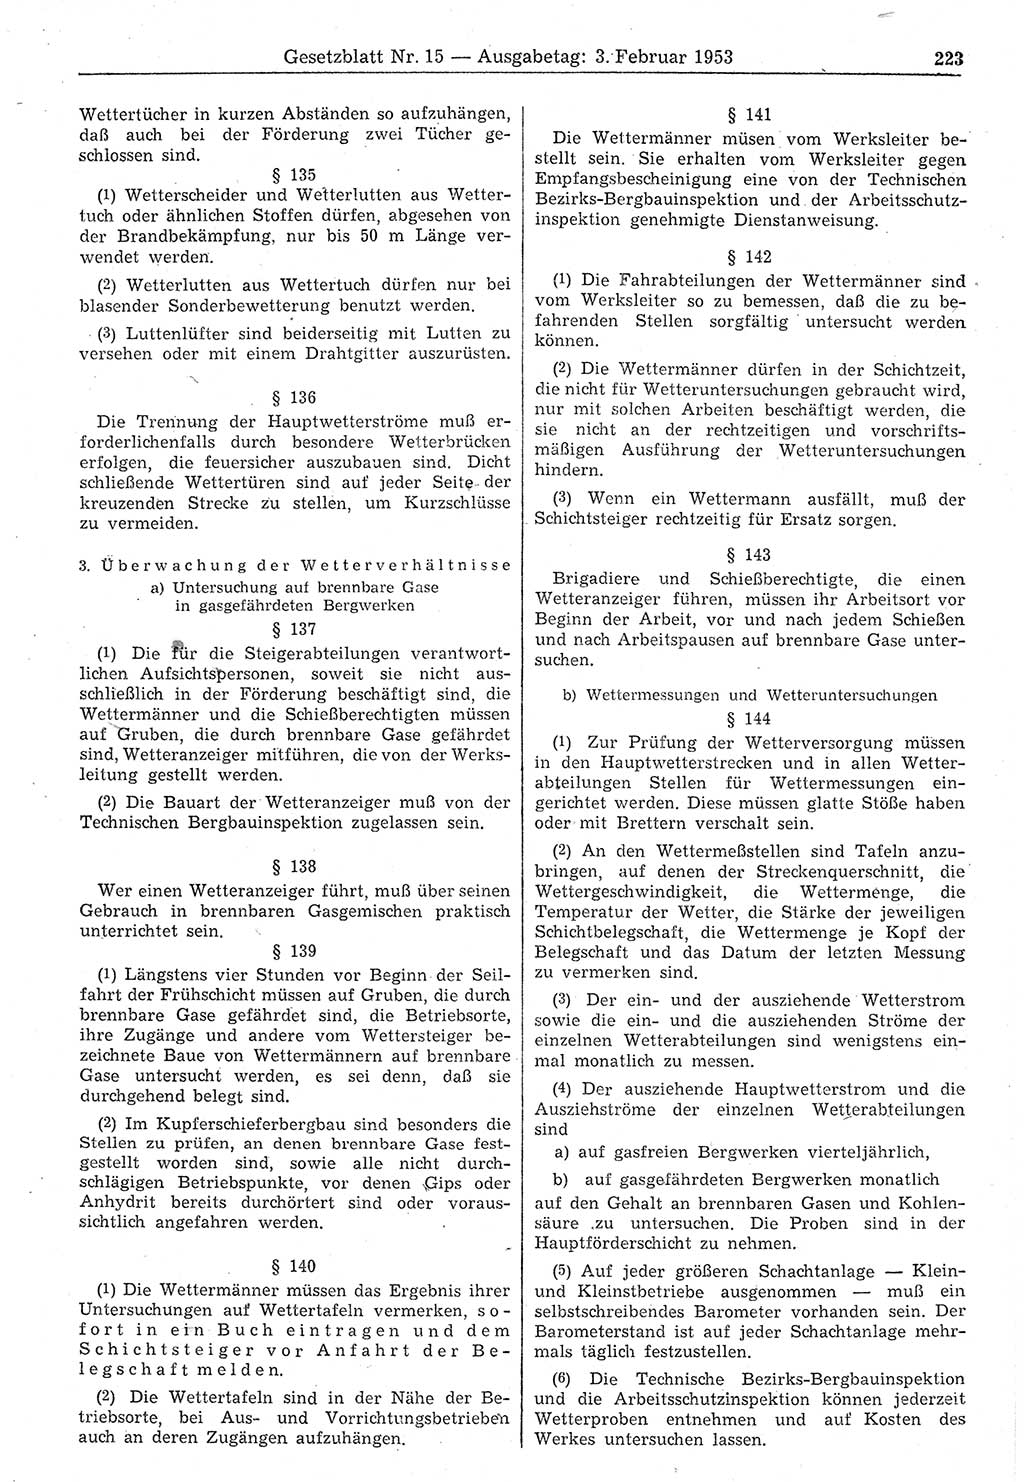 Gesetzblatt (GBl.) der Deutschen Demokratischen Republik (DDR) 1953, Seite 223 (GBl. DDR 1953, S. 223)